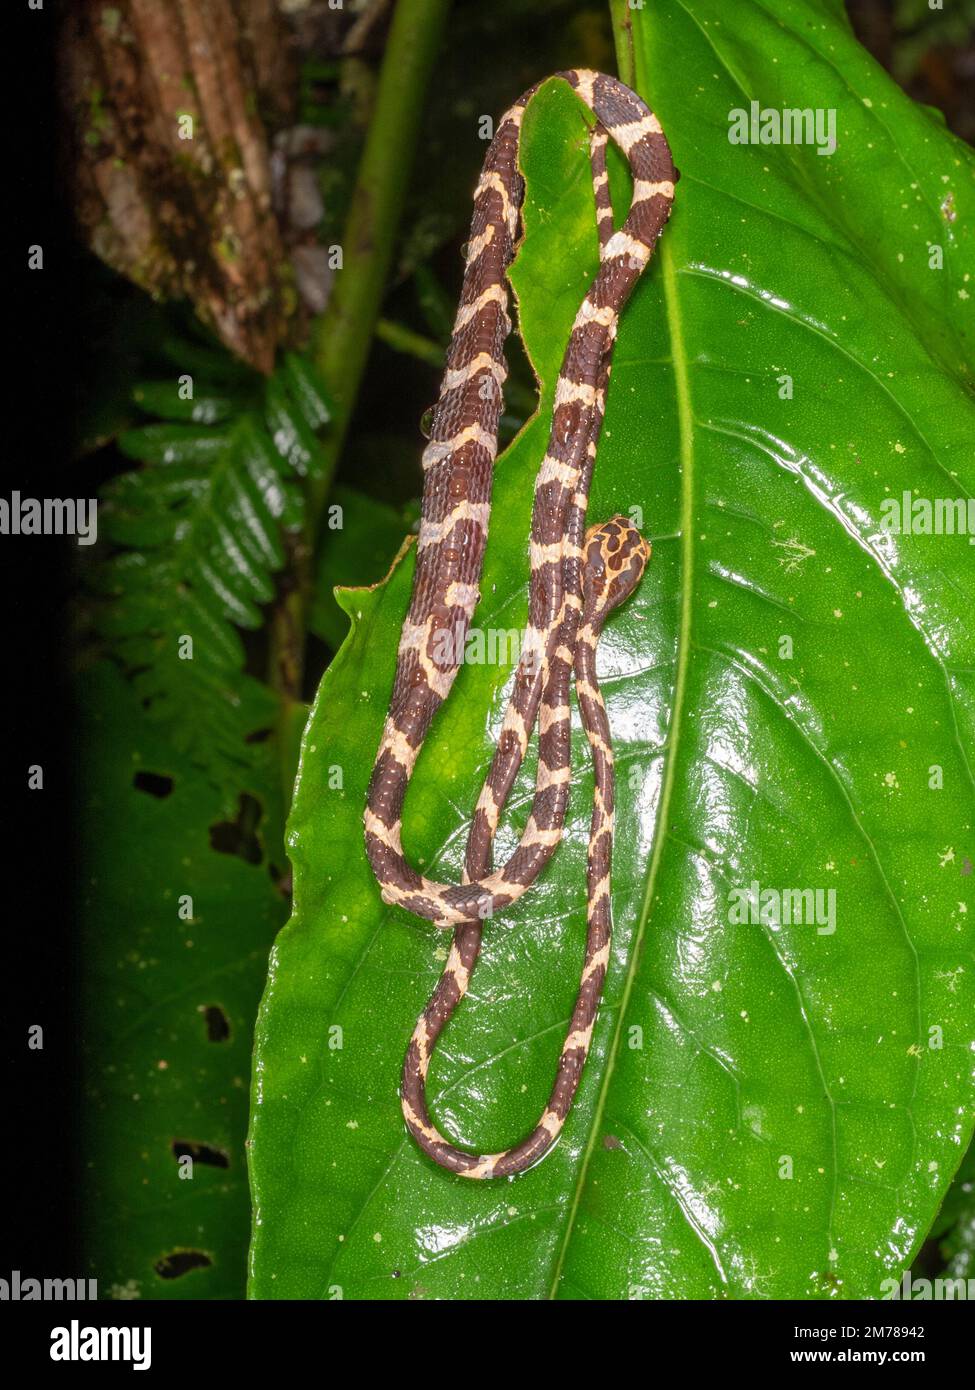 Serpiente de cabeza roma (Imantodes cenchoa), descansando sobre una hoja de bosque lluvioso con abdomen distendido después de una comida, provincia de Orellana, Ecuador Foto de stock